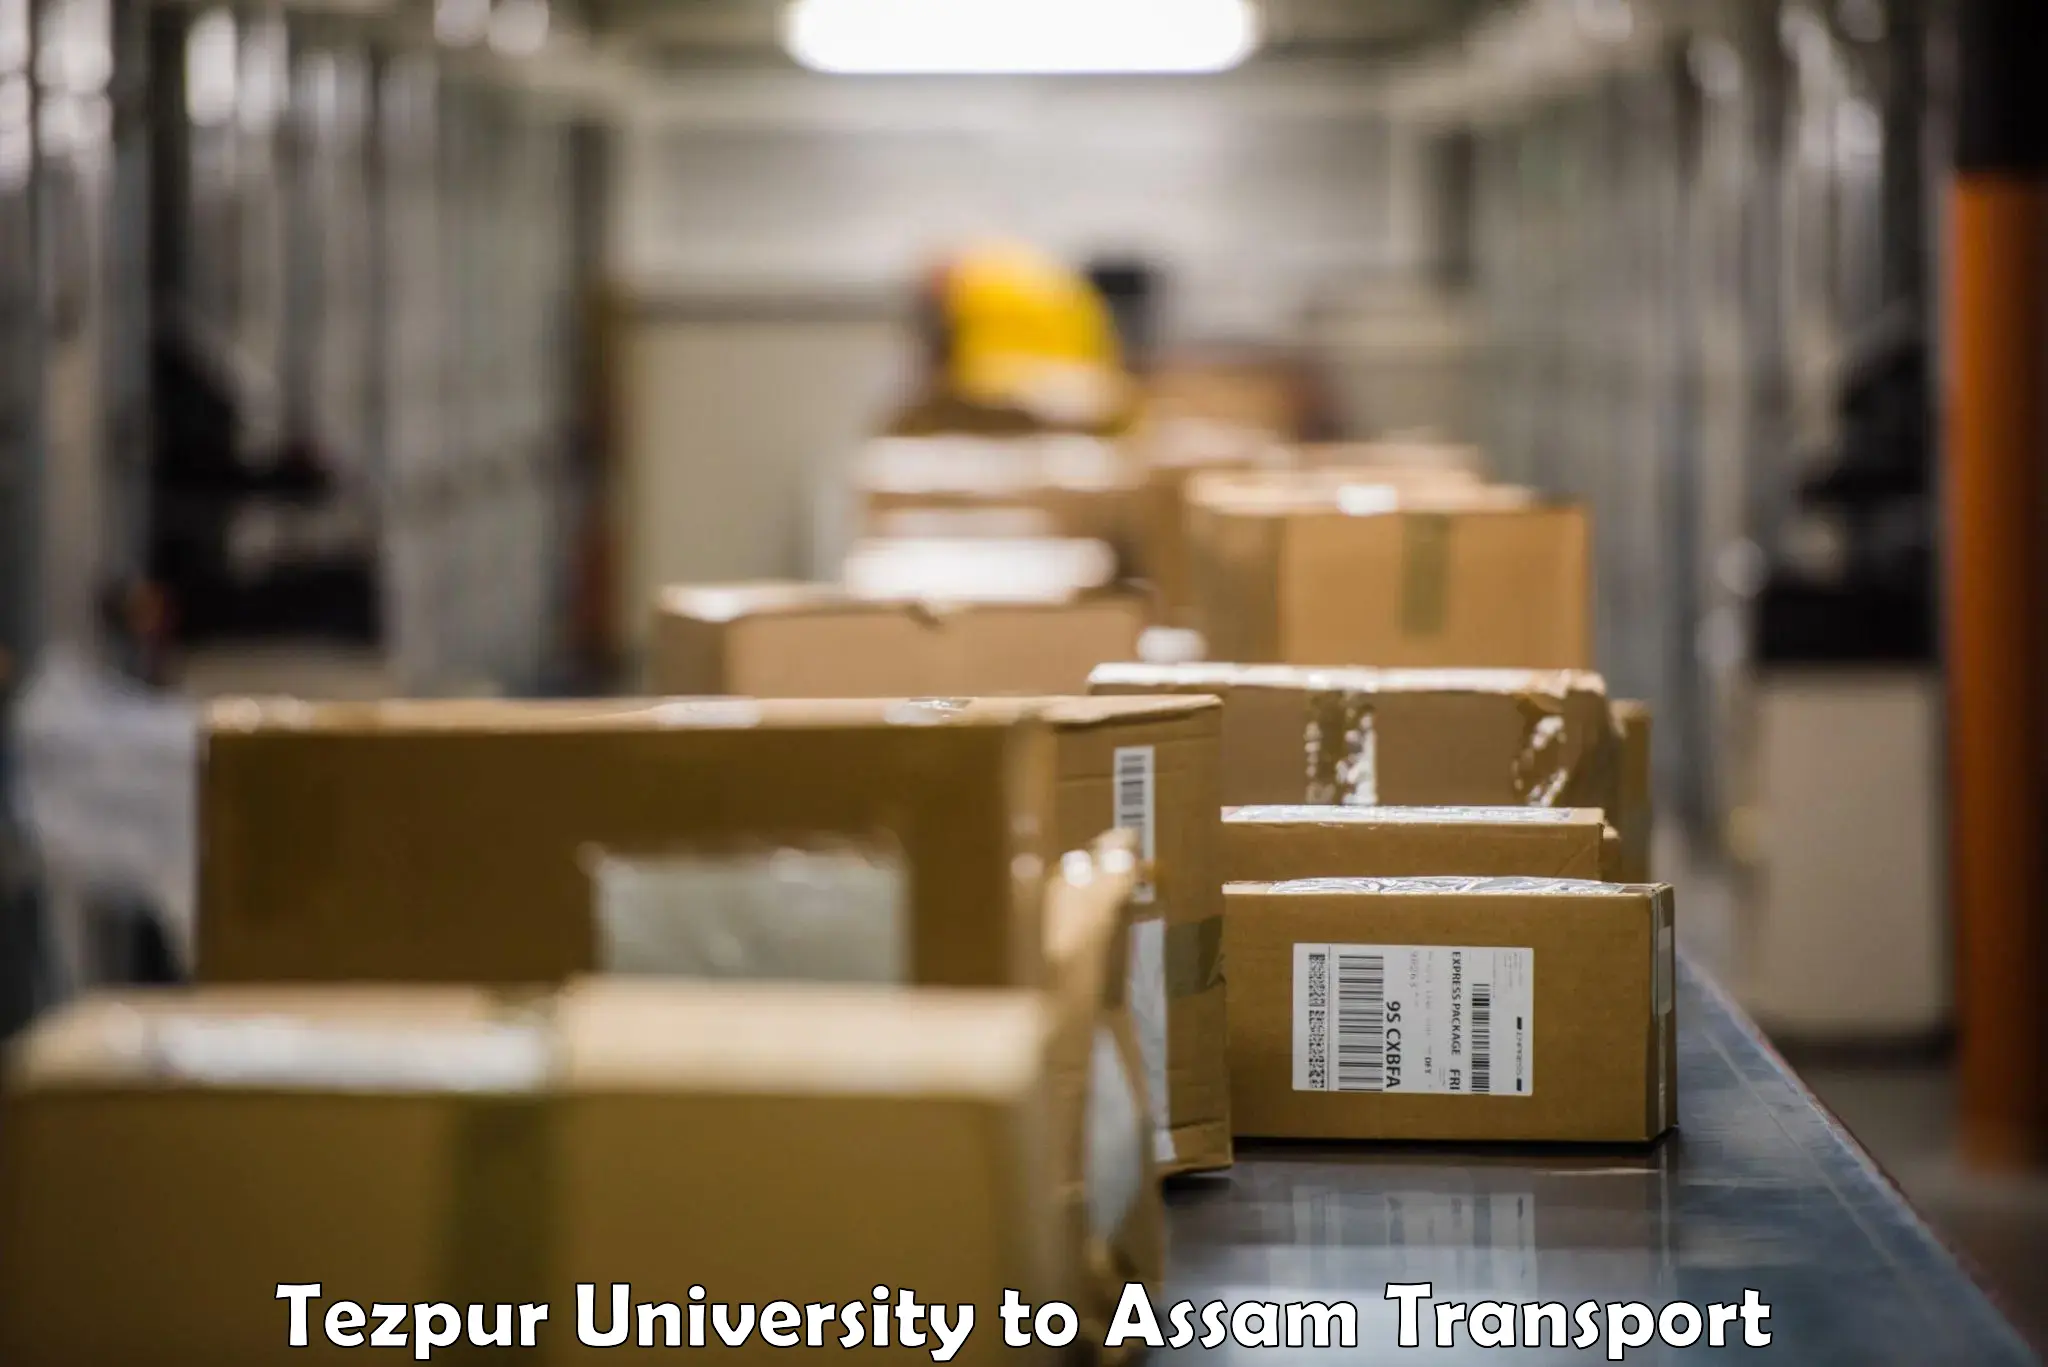 Delivery service Tezpur University to Bijni